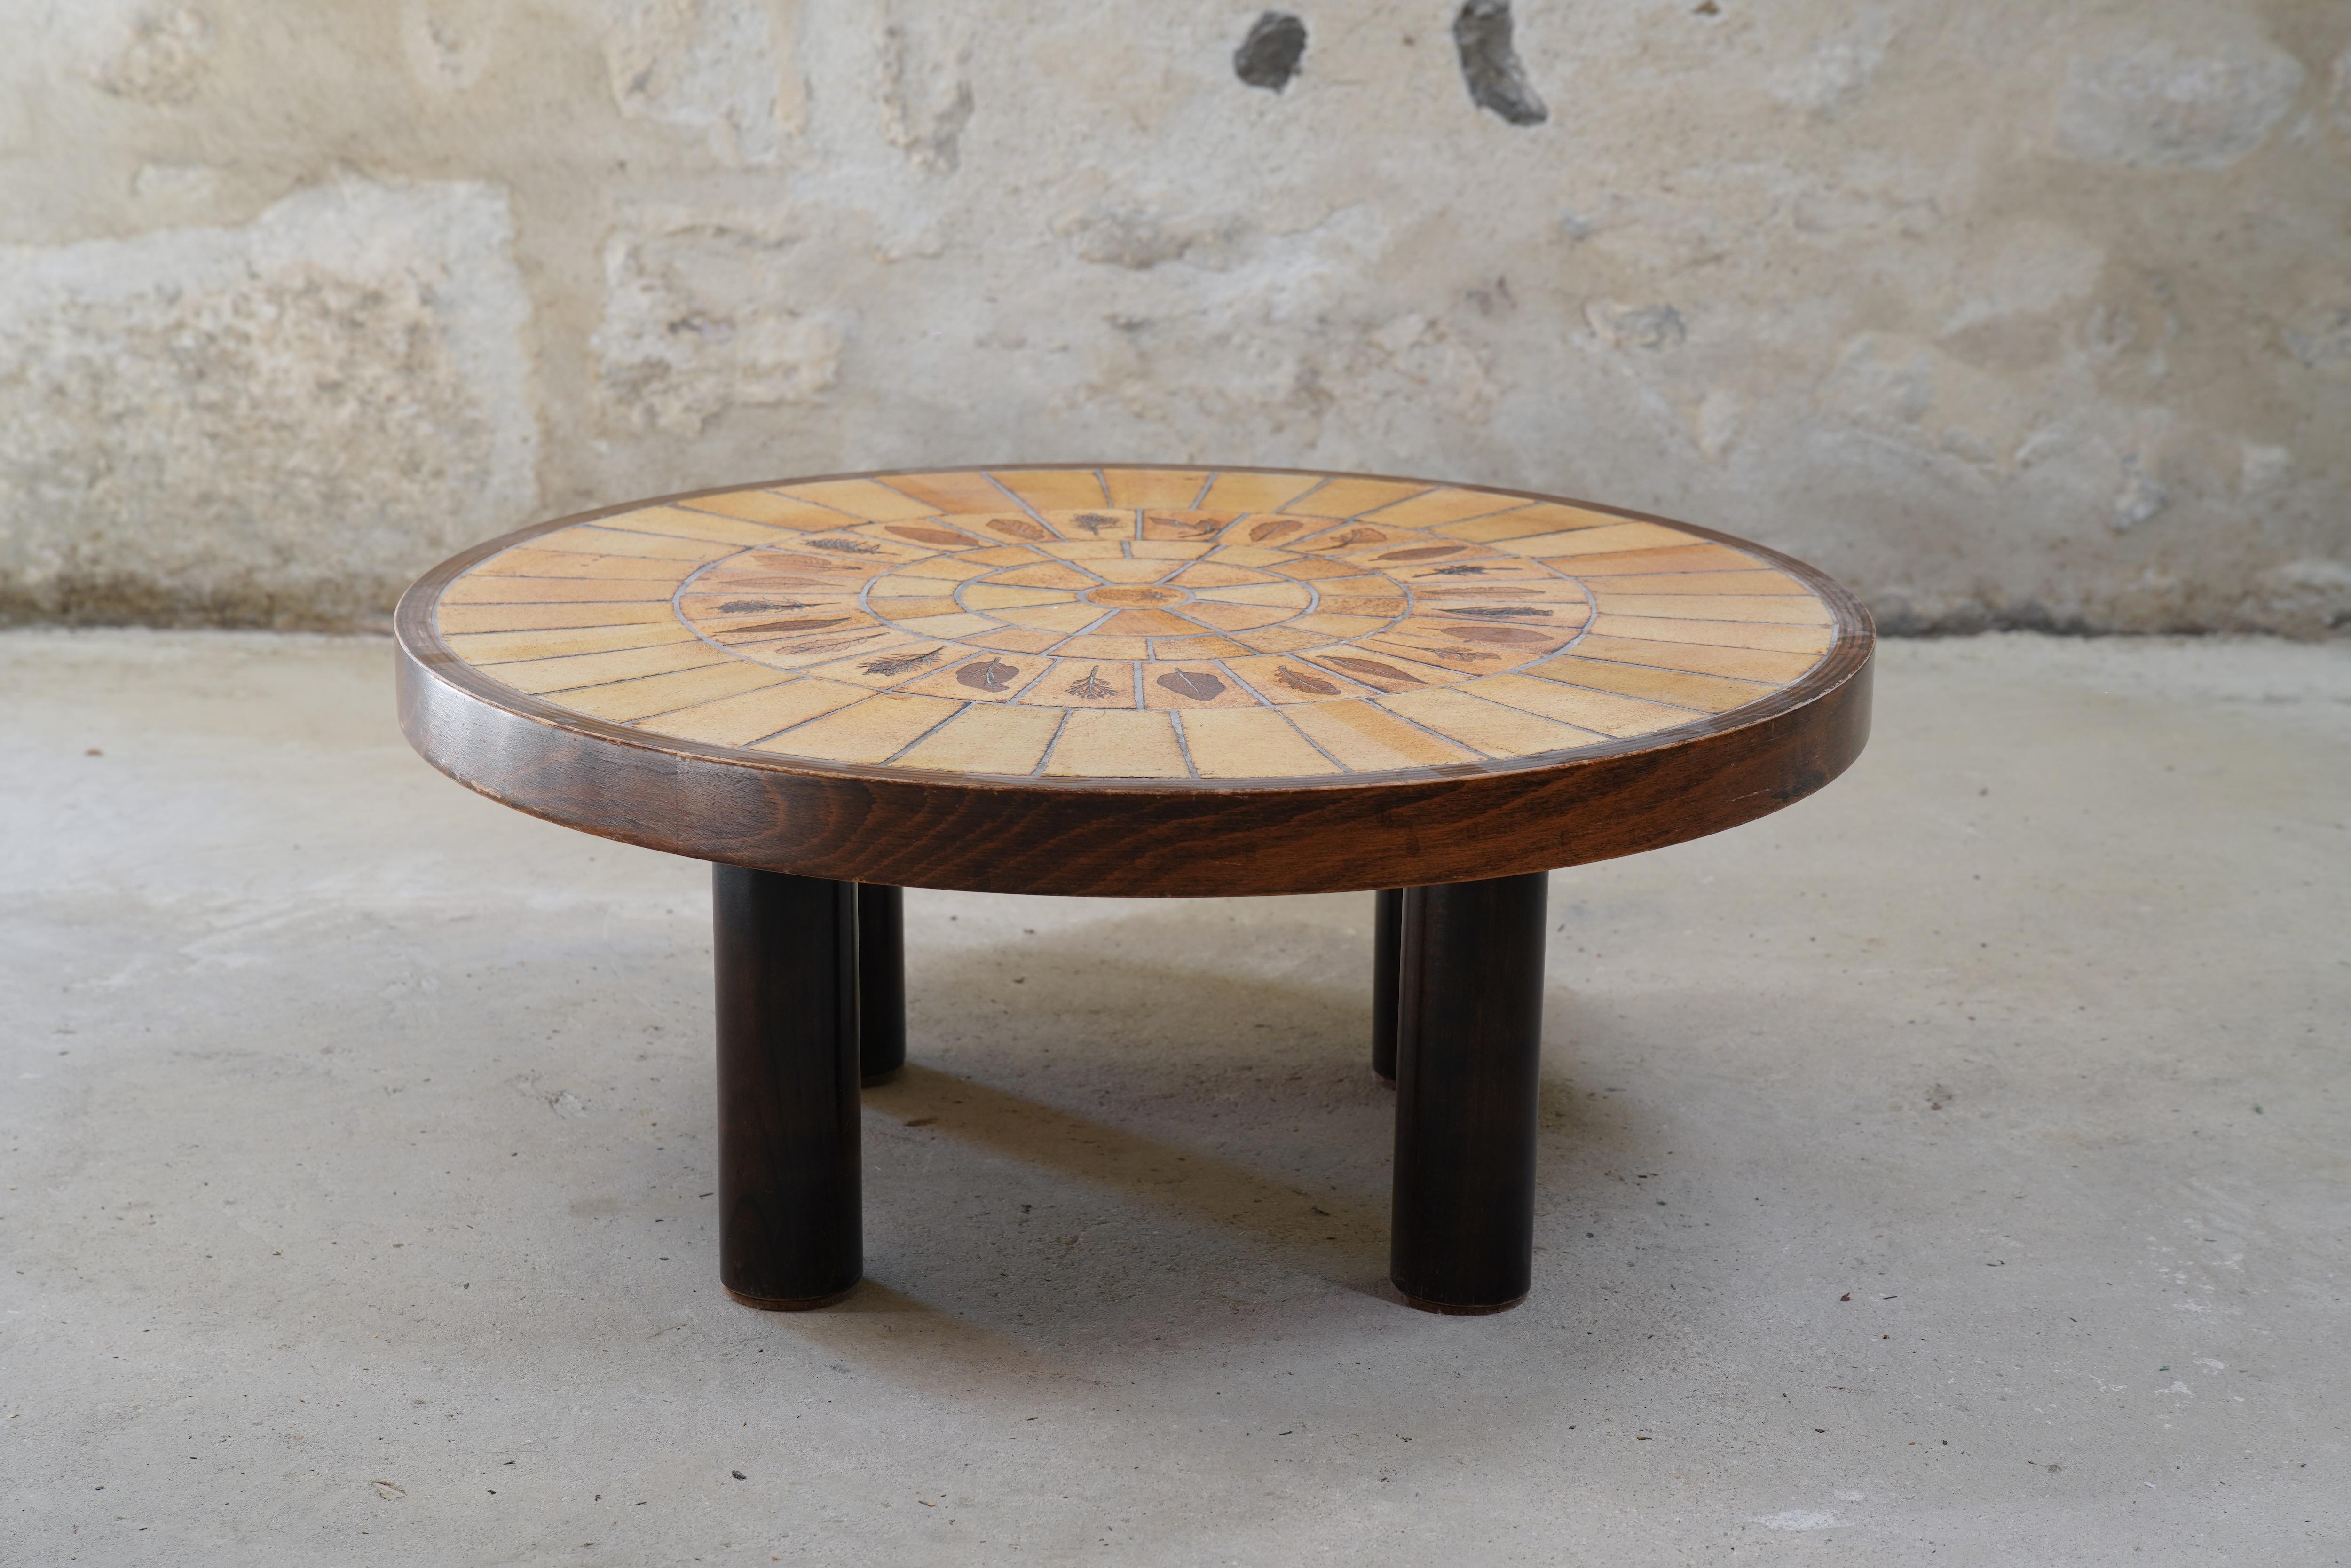 Impressionnante table basse en céramique Roger Capron avec des carreaux de Garrigue de France, vers les années 1960.

Les carreaux de Garrigue, fabriqués à la main, sont issus d'une technique où de vraies feuilles sont pressées dans l'argile et se